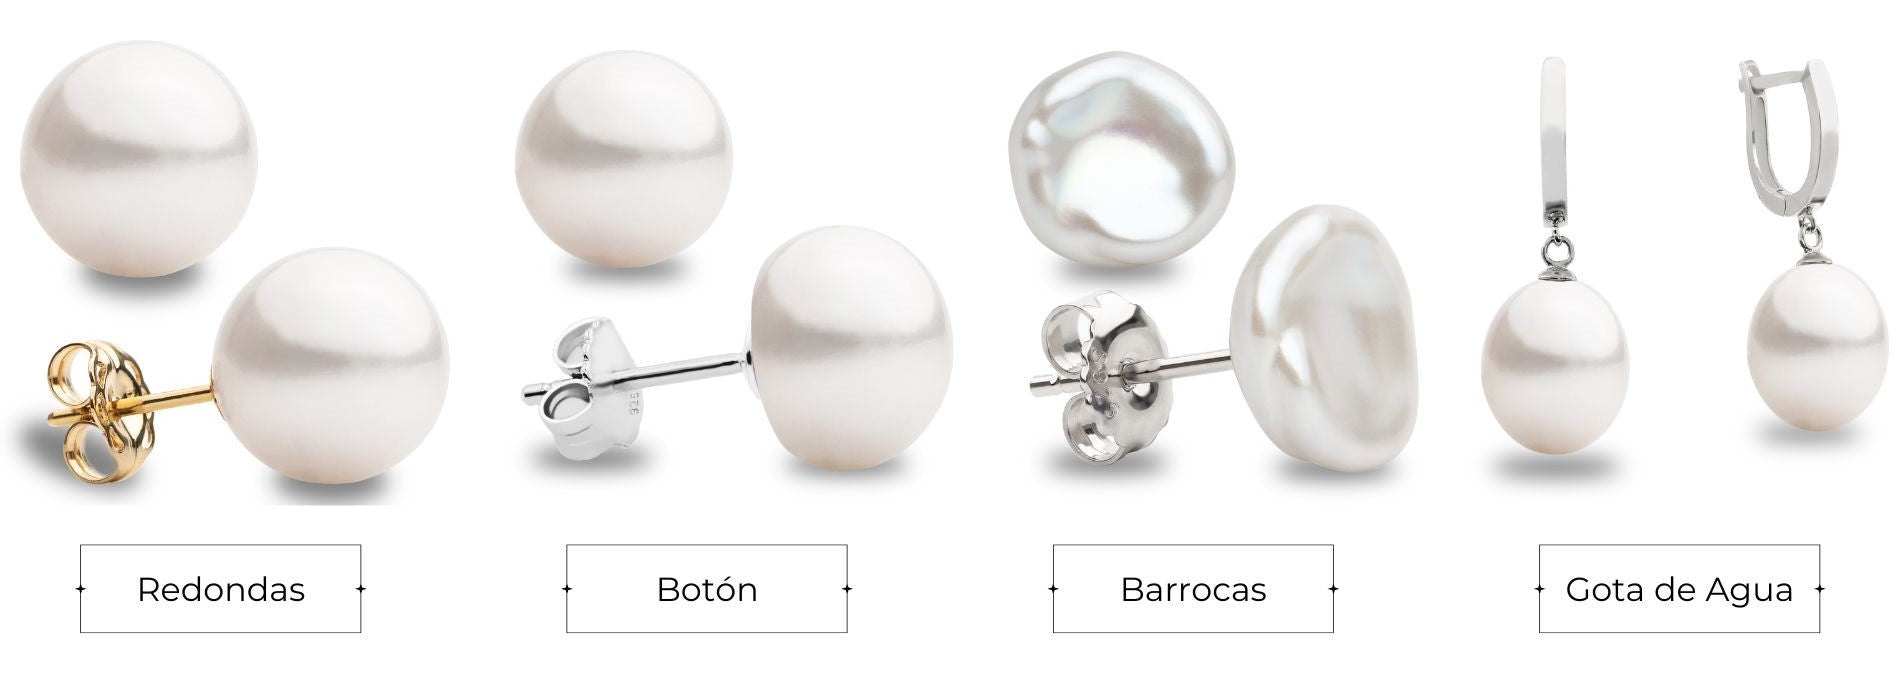 Arten von Perlen nach ihrer Form